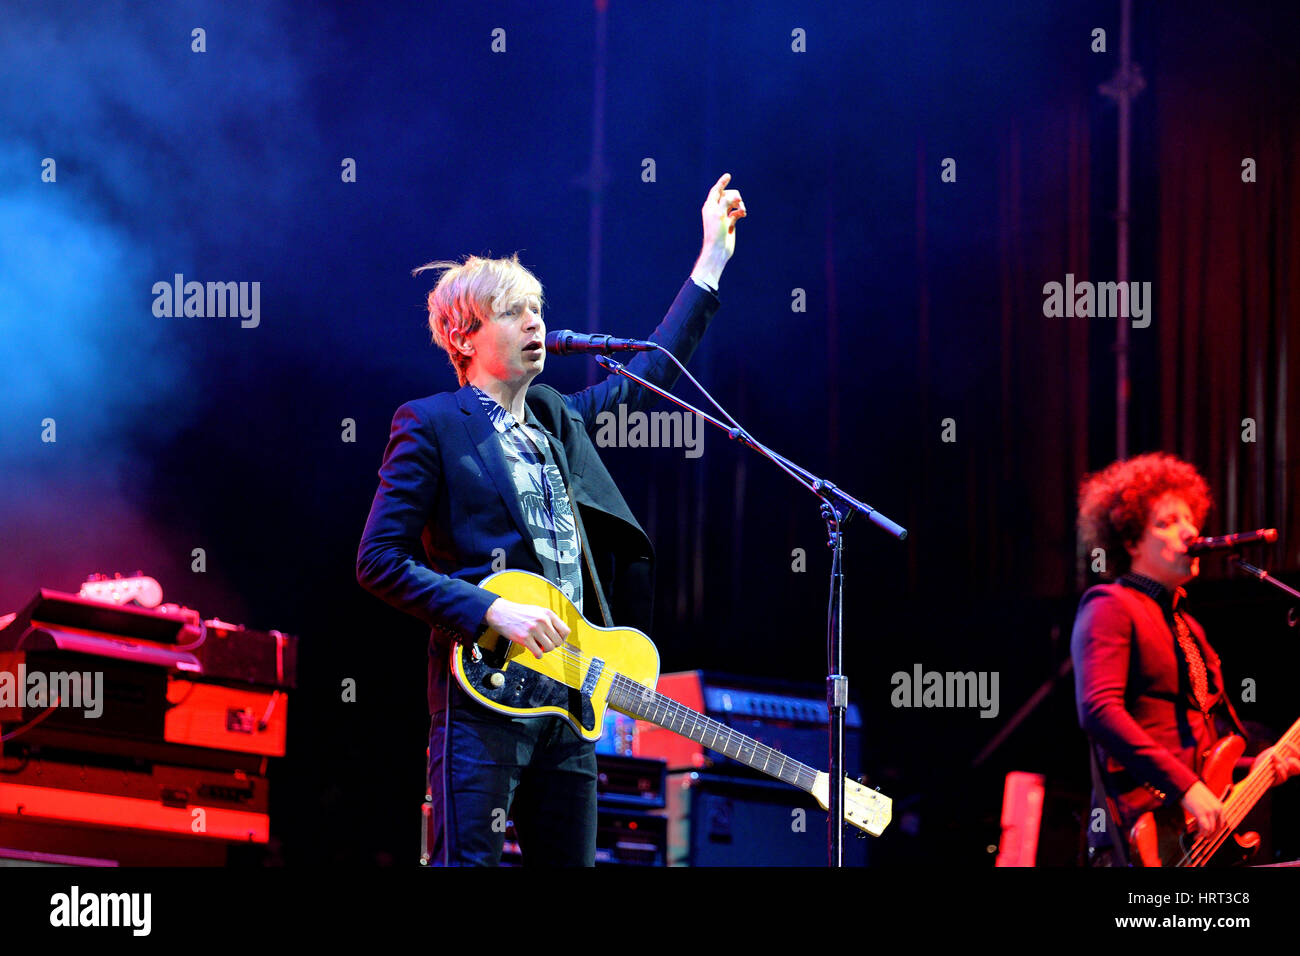 MADRID - SEP 13: Beck (legendary musician, singer and songwriter) performance at Dcode Festival on September 13, 2014 in Madrid, Spain. Stock Photo